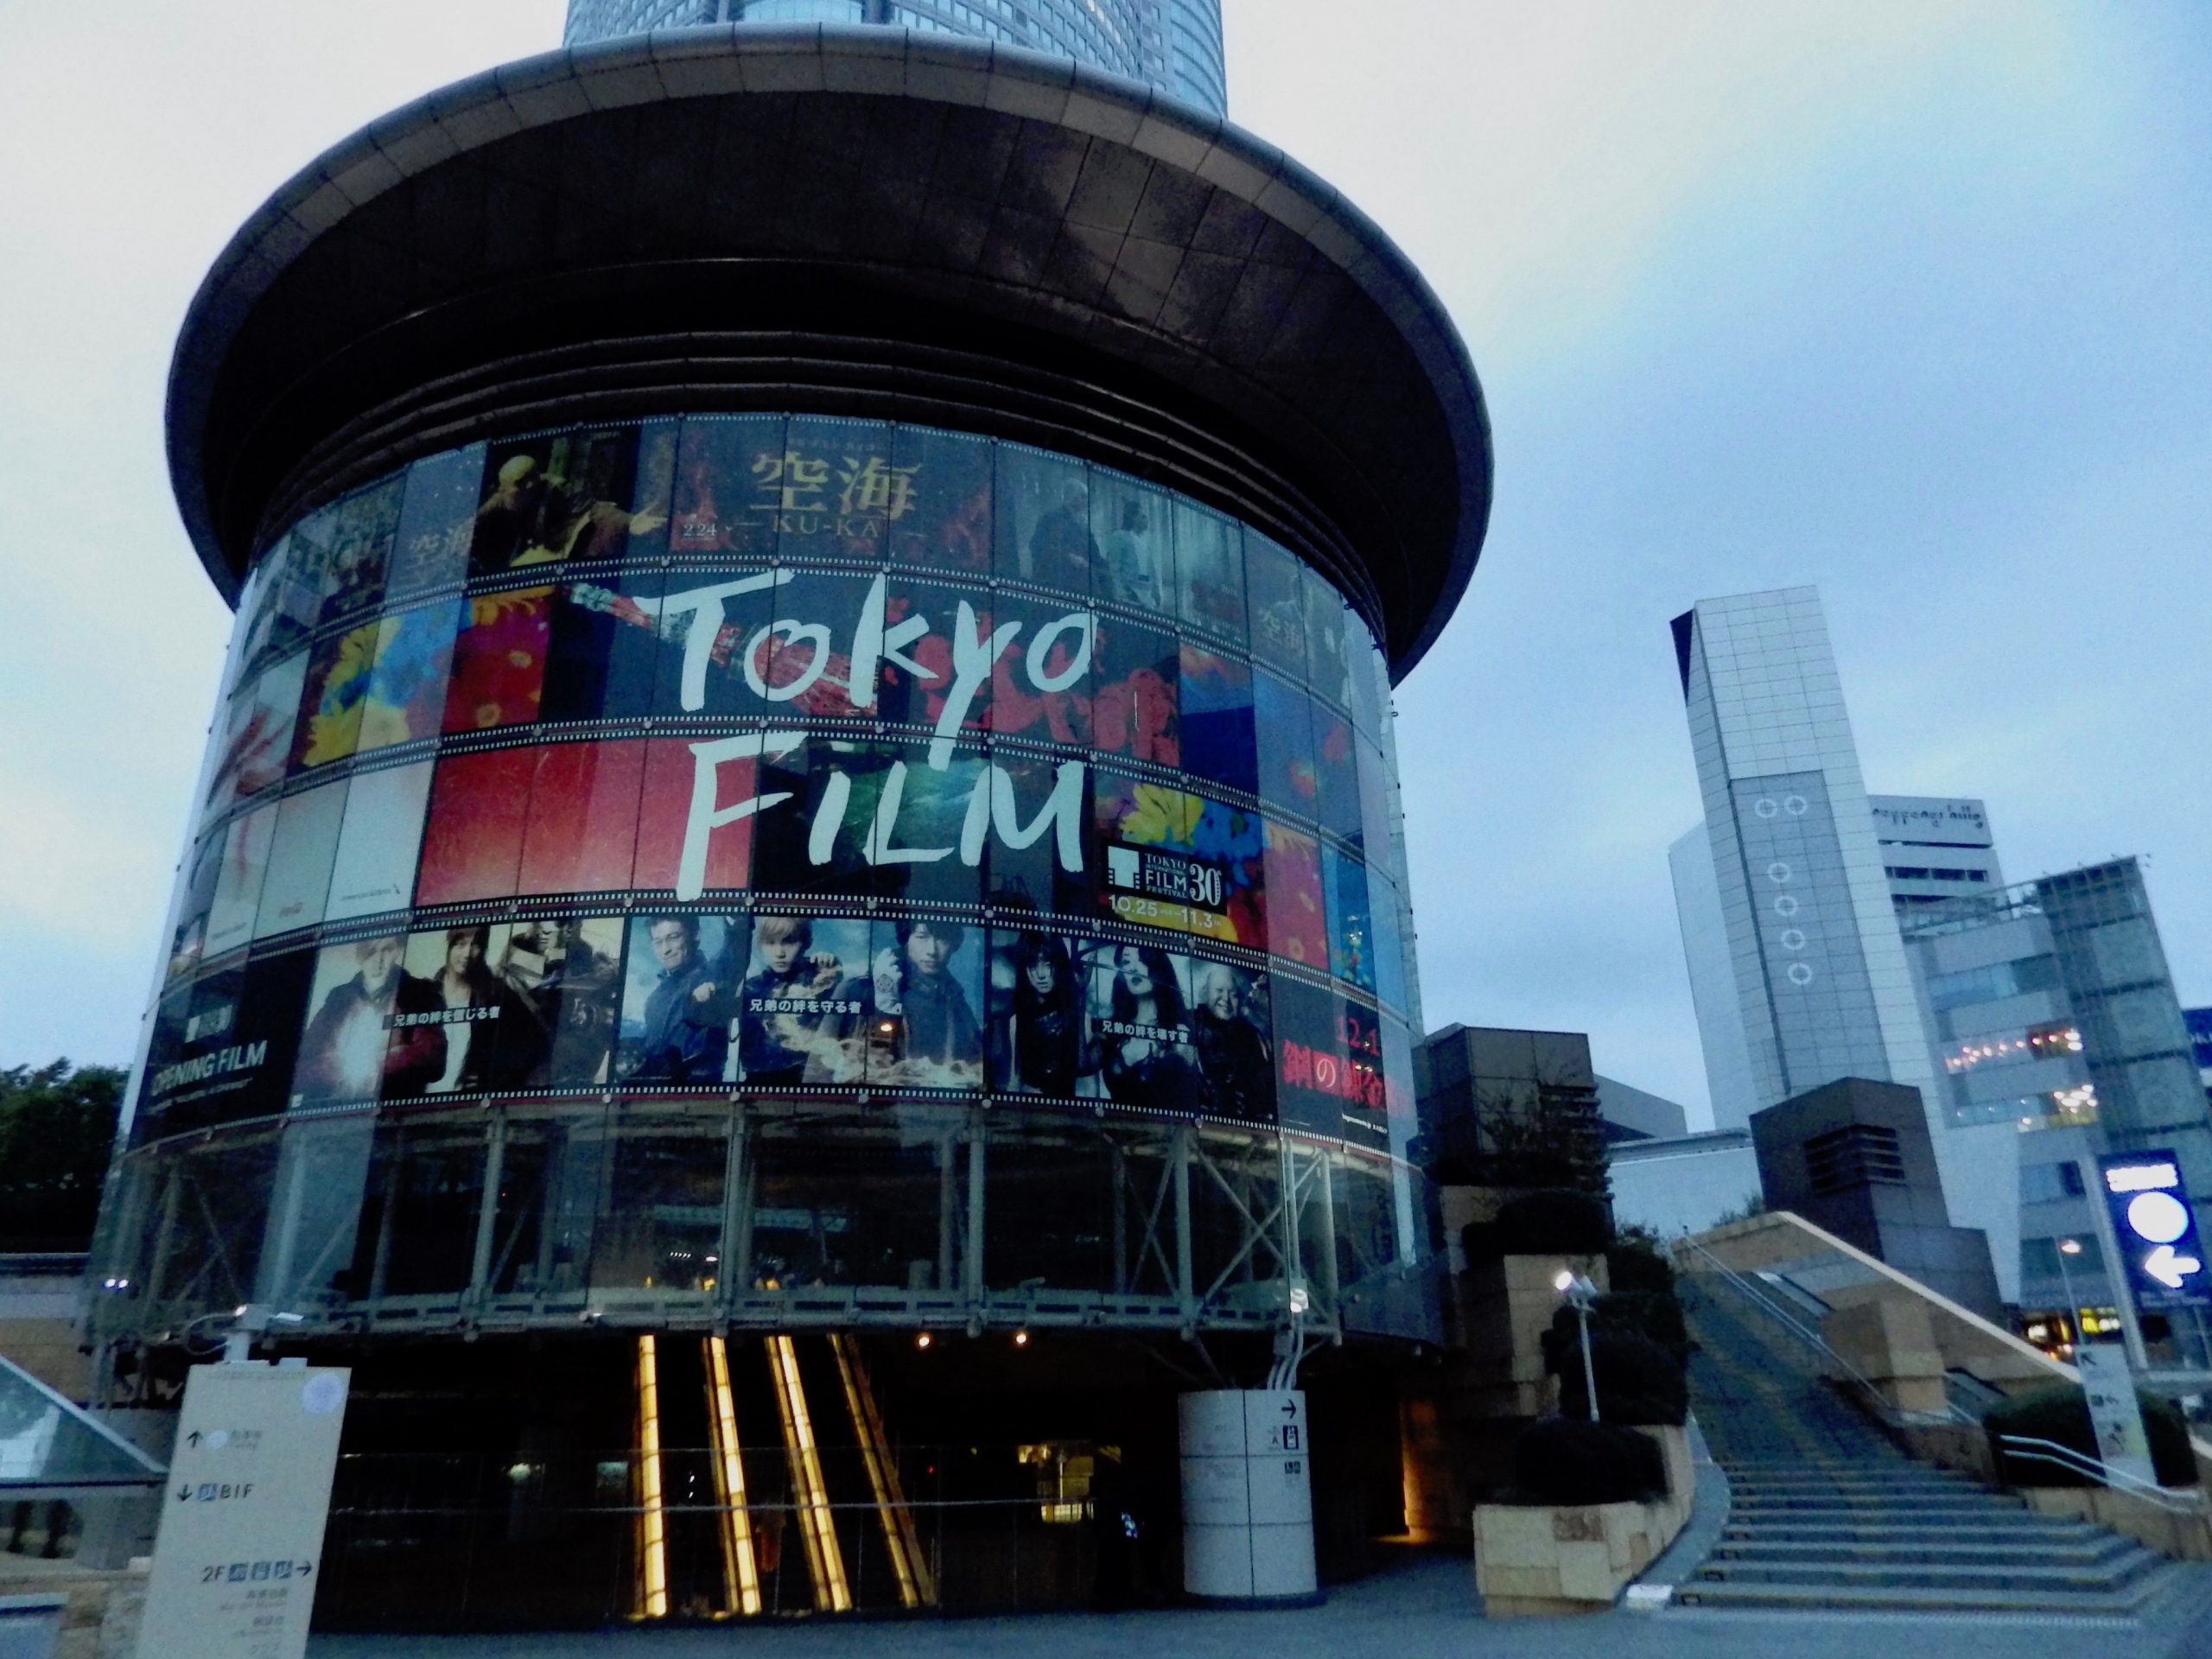 Tokyo International Film Festival Kicks off